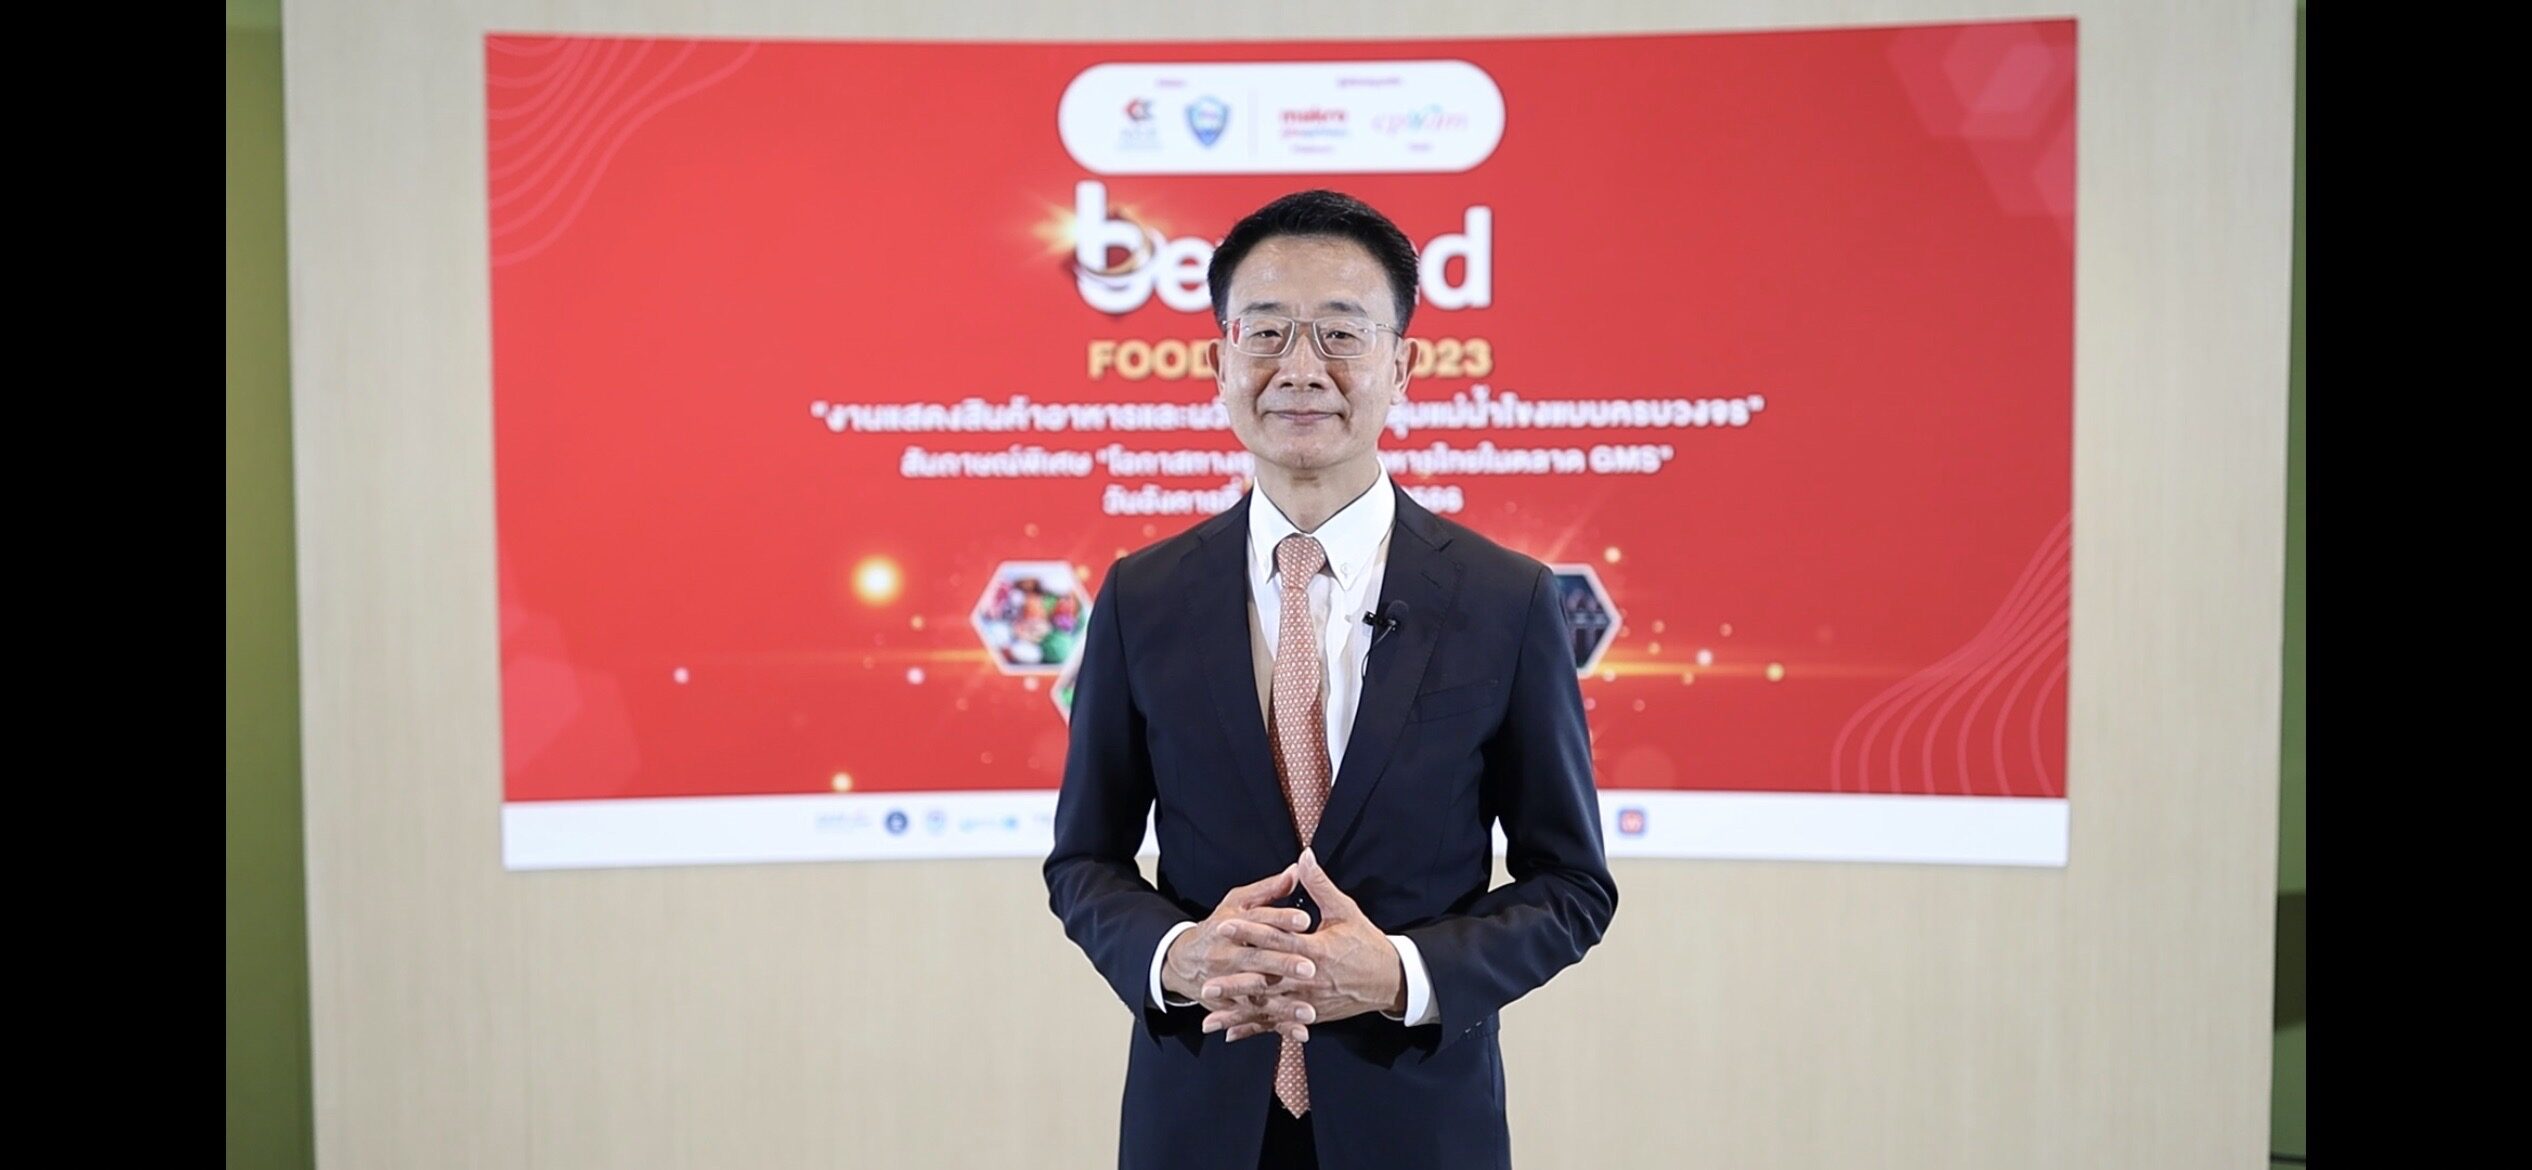 คุณวิศิษฎ์ ลิ้มลือชา รองประธานกรรมการหอการค้าไทยและประธานกลุ่มอุตสาหกรรมอาหาร สภาอุตสาหกรรมแห่งประเทศไทย